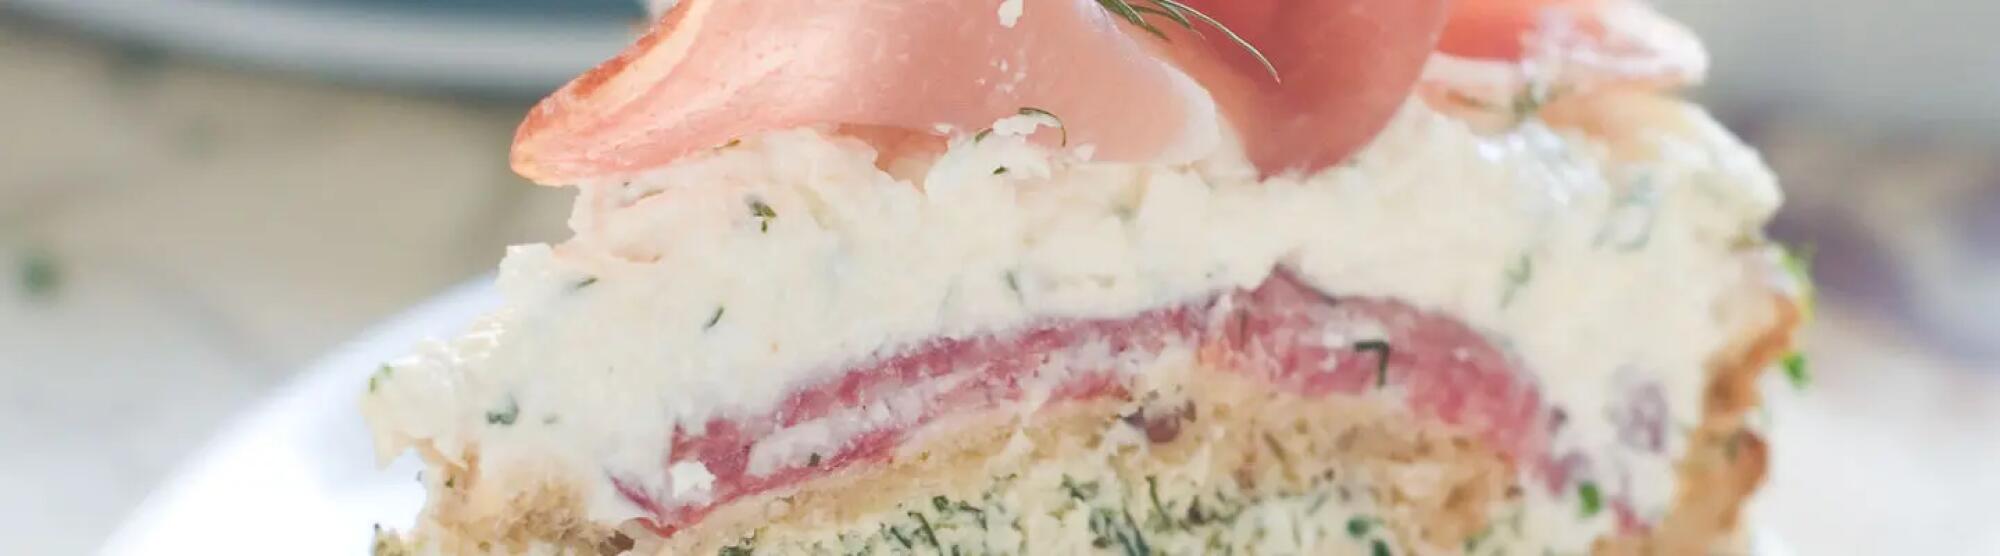 Recette : Sandwich-cake au thon, crudités et fromage de chèvre frais